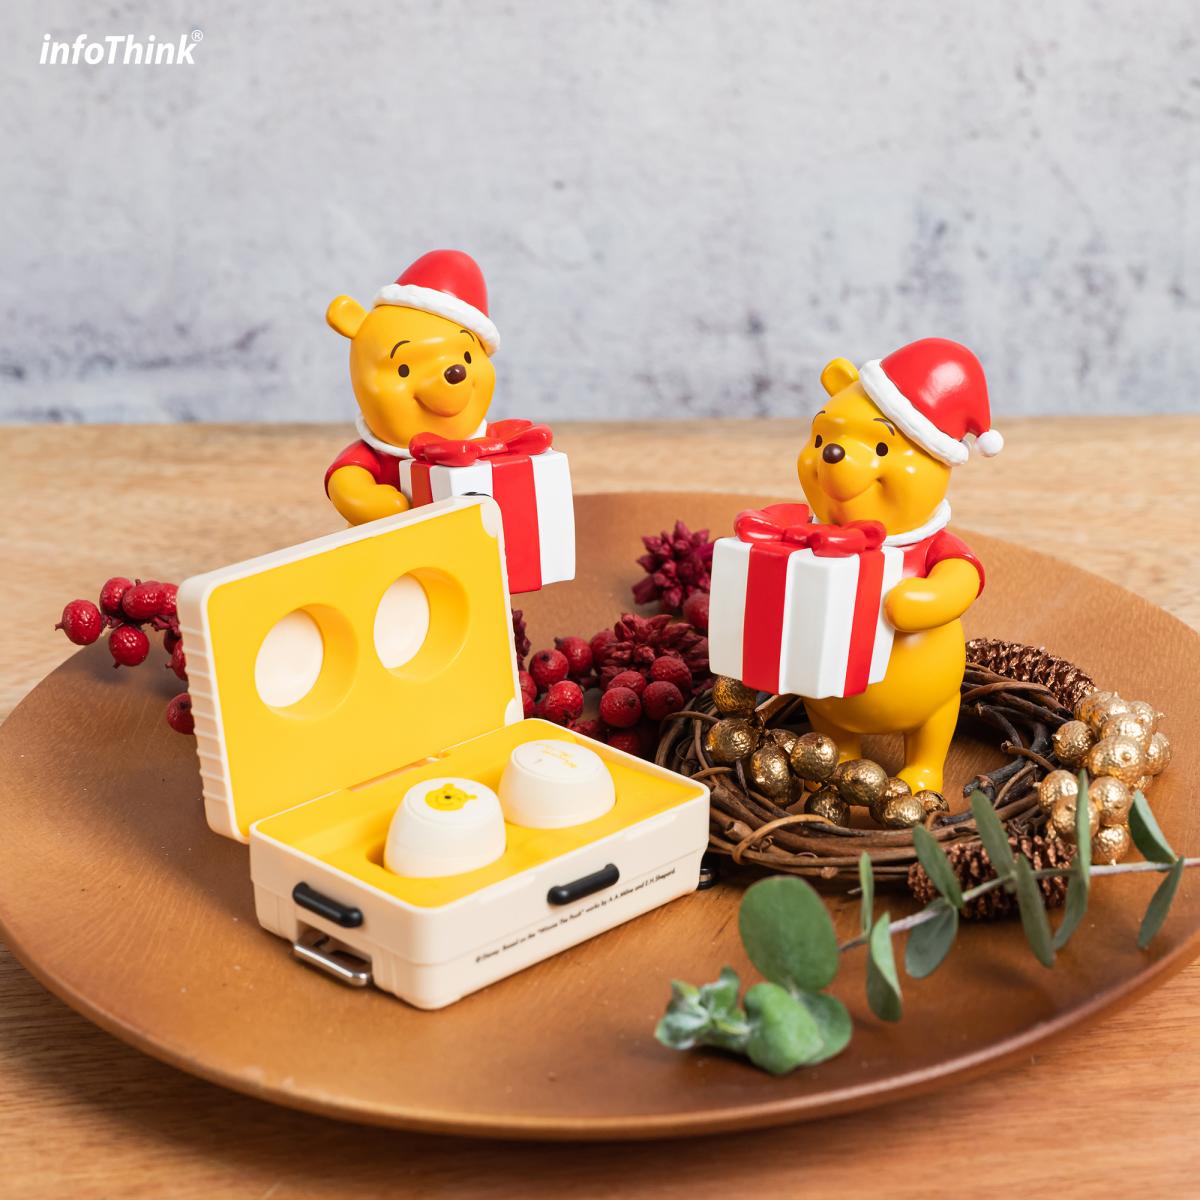 福利品【Infothink】小熊維尼系列聖誕版真無線藍牙耳機